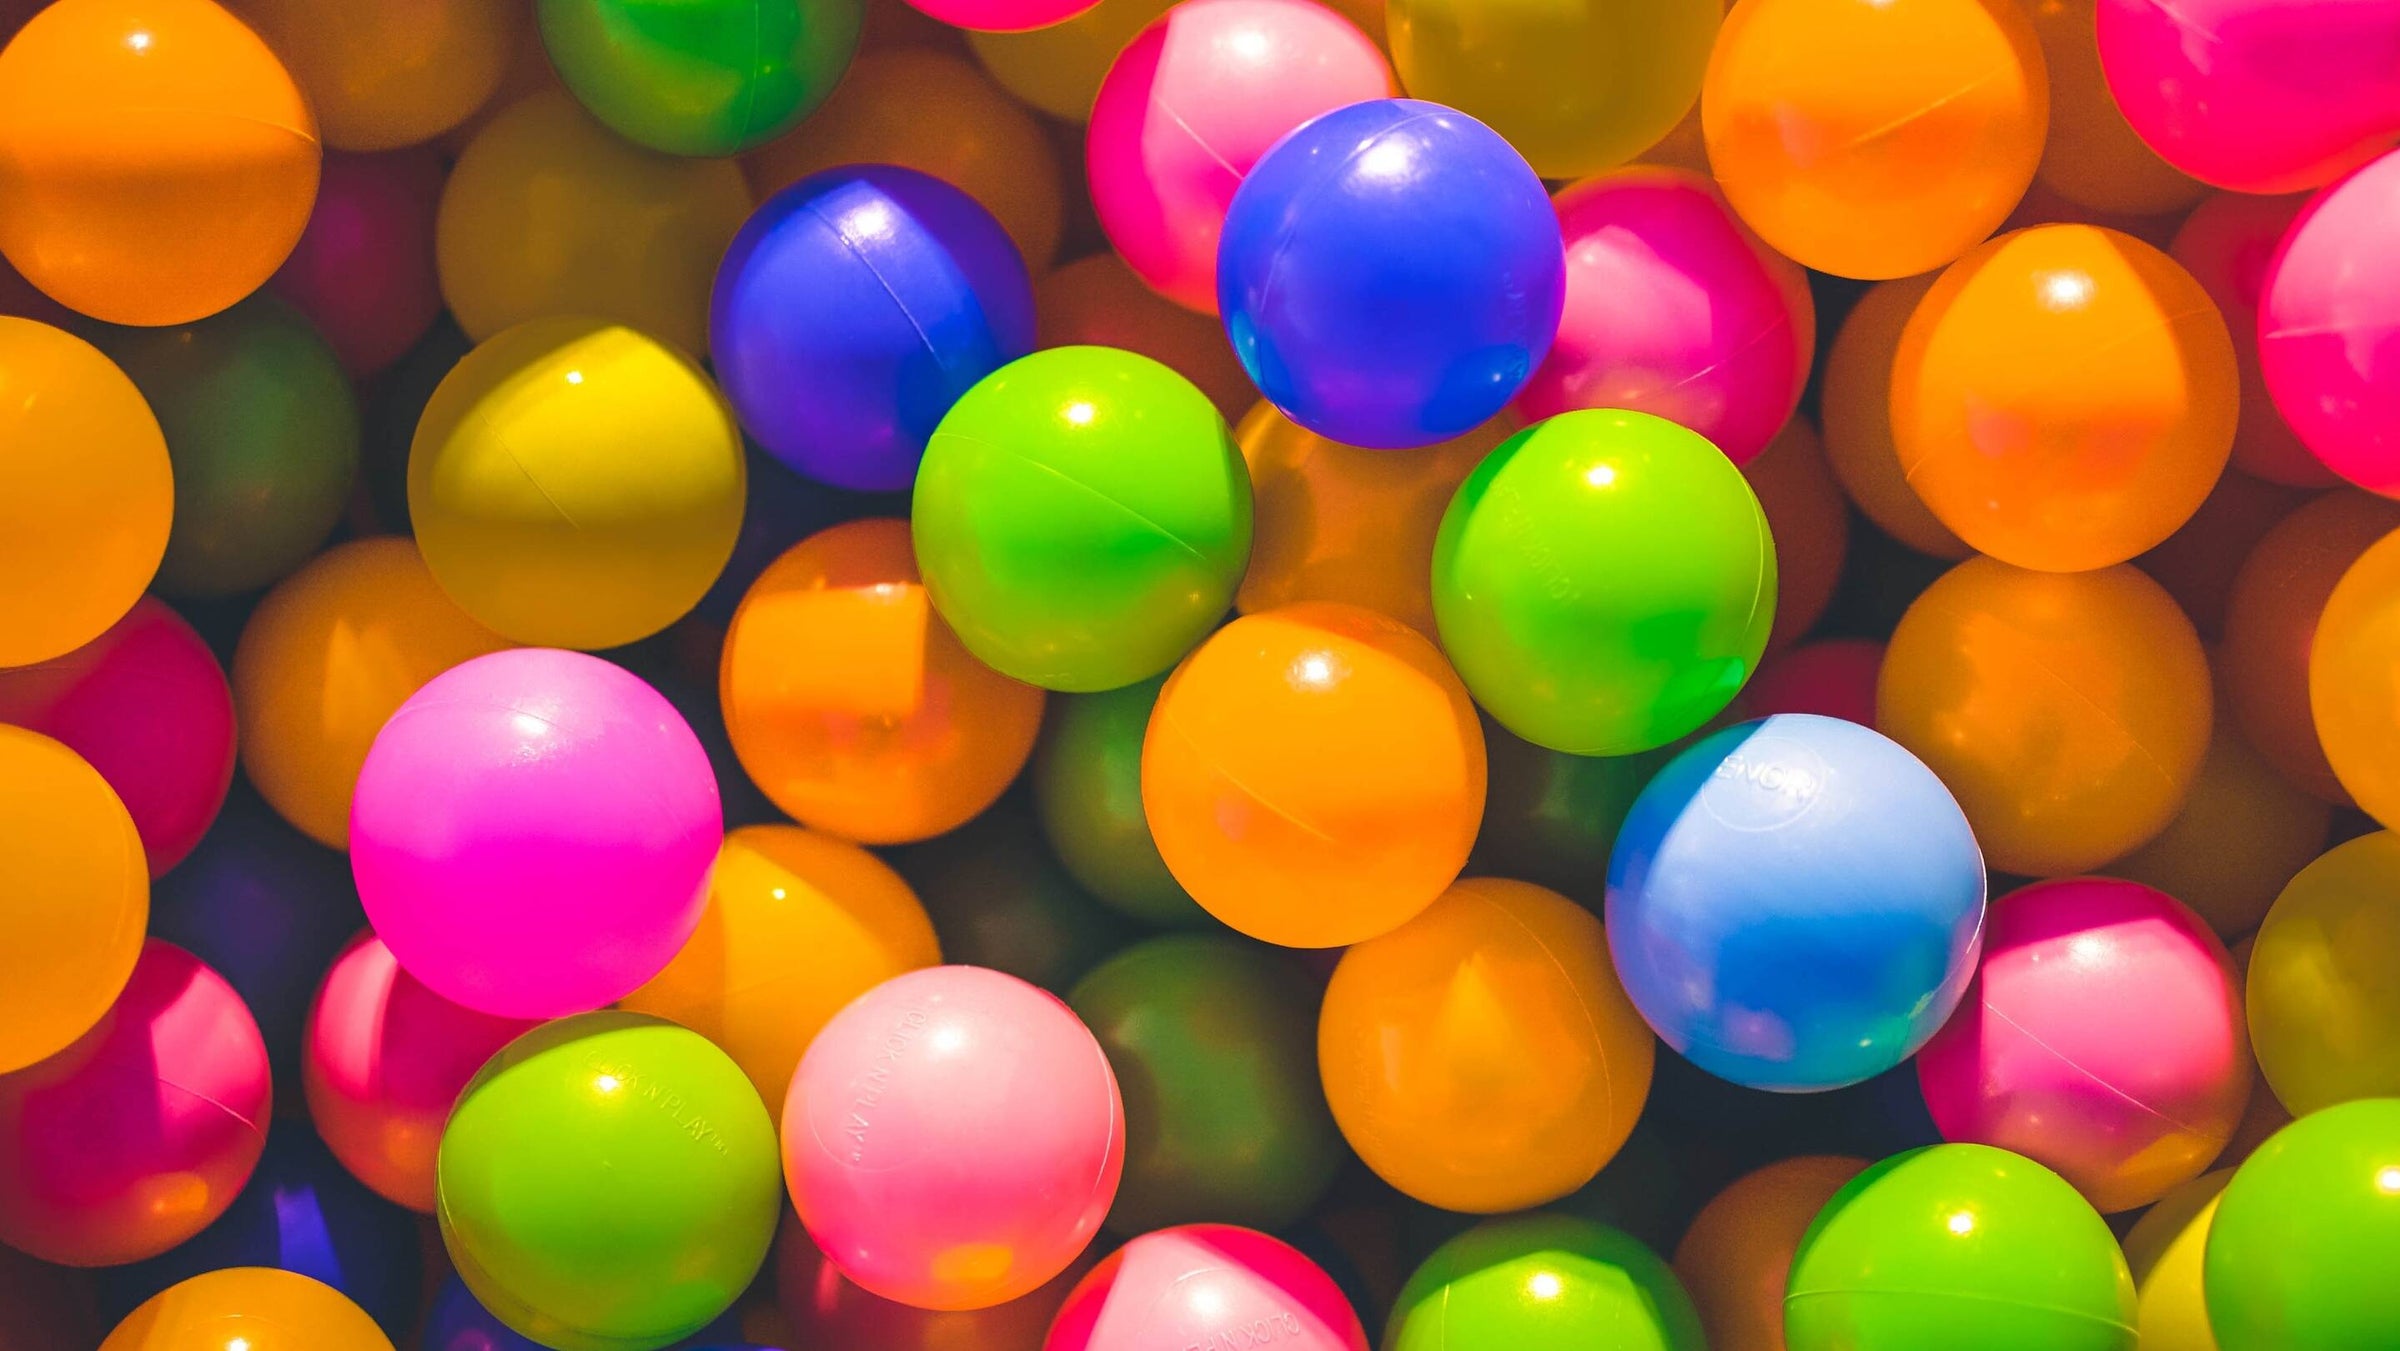 colored plastic balls